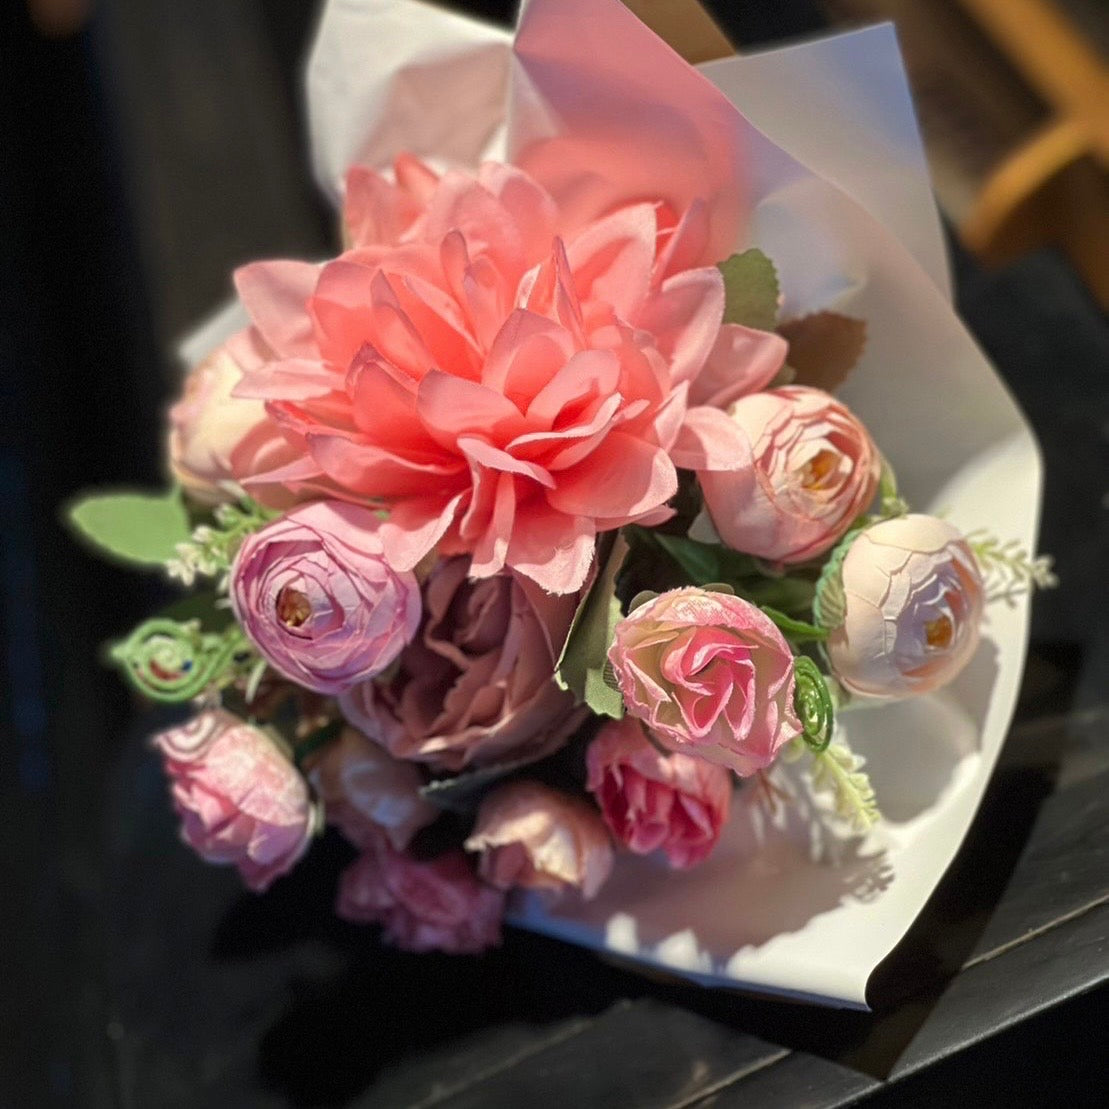 Petit bouquet gift